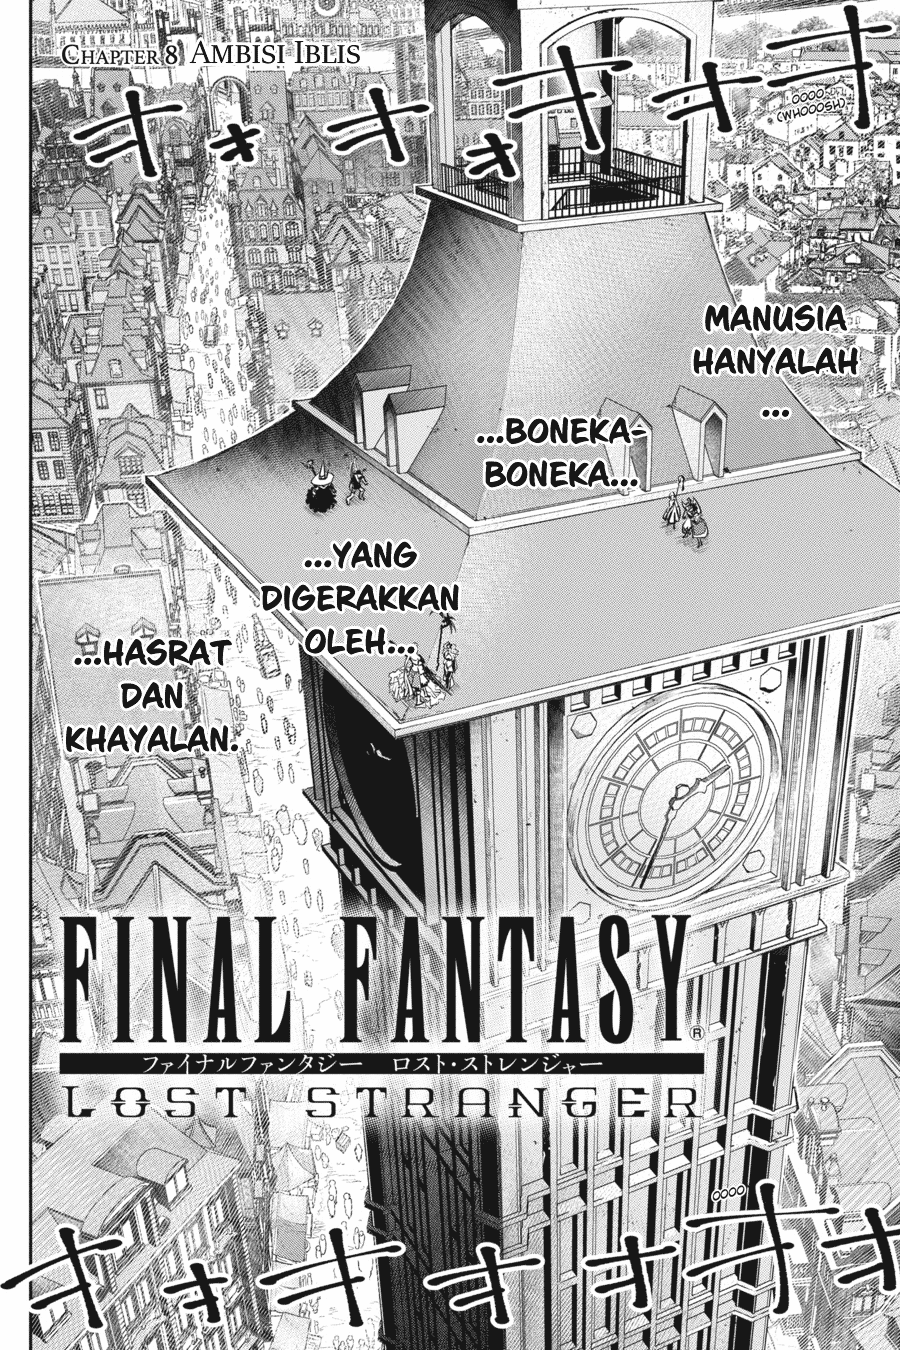 Final Fantasy: Lost Stranger Chapter 08